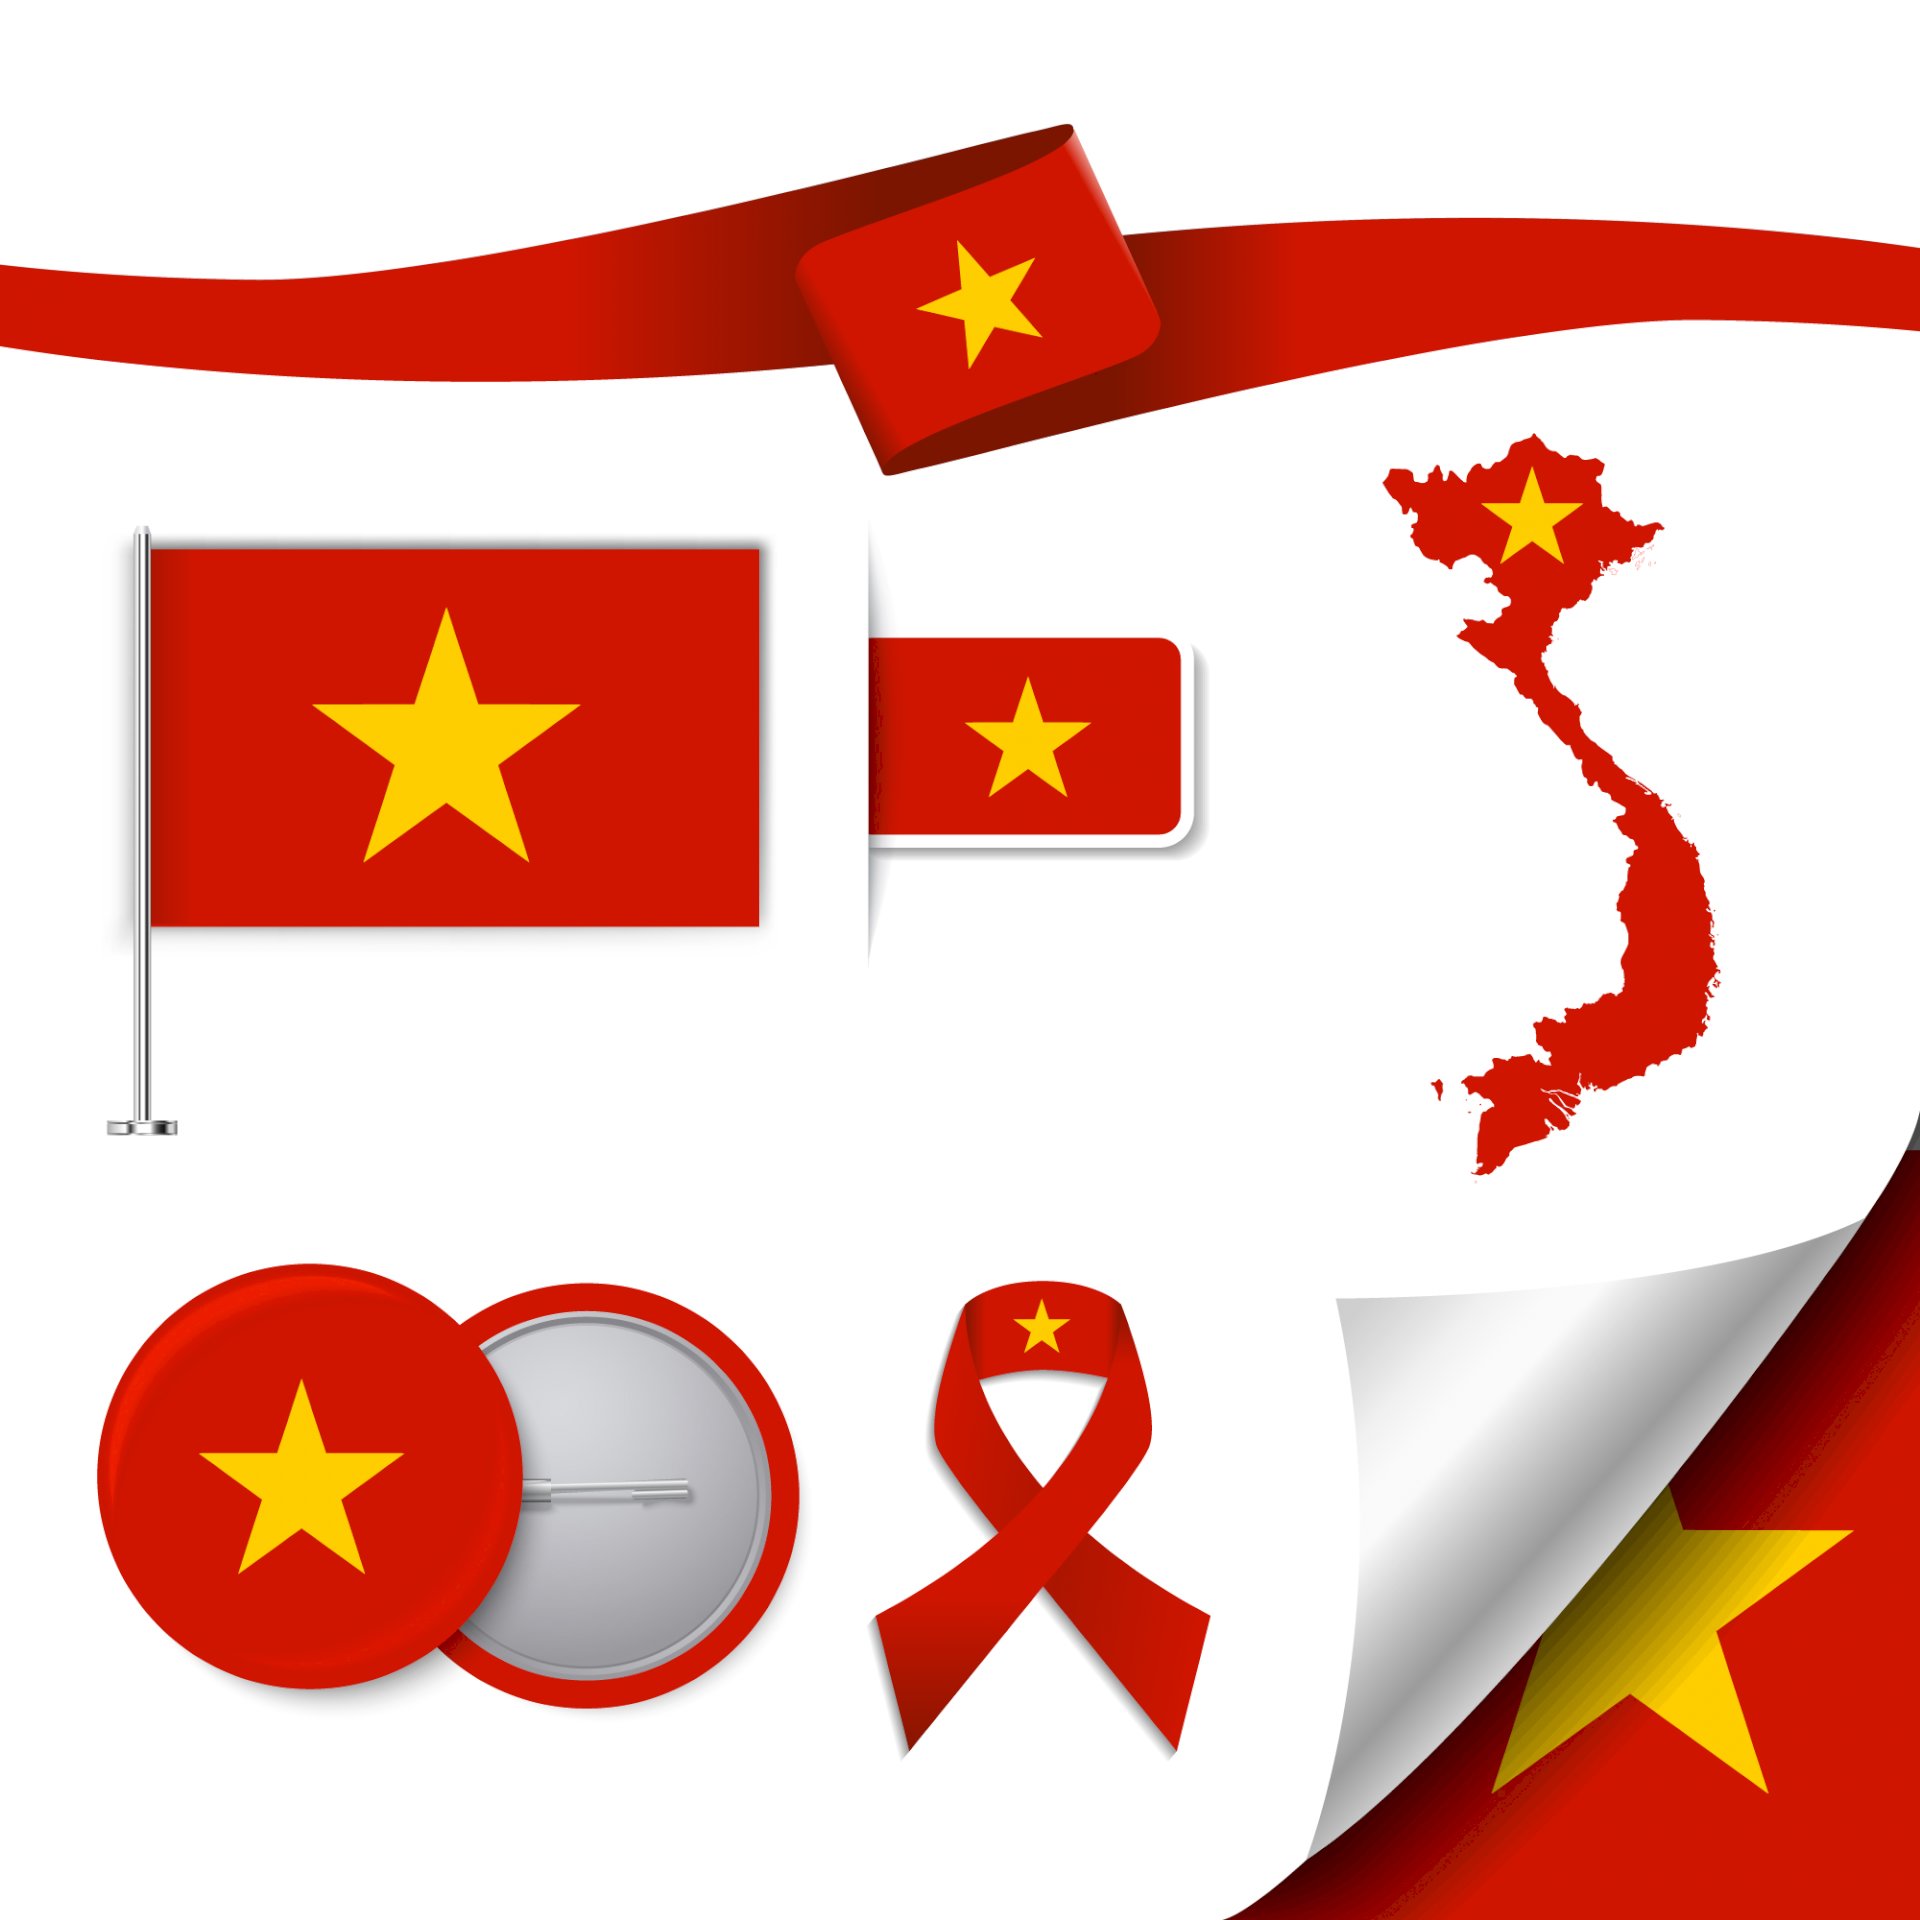 Logo lá cờ Việt Nam: Logo lá cờ Việt Nam đang trở thành nguồn cảm hứng cho nhiều nhà thiết kế đồ họa. Với sự kết hợp giữa những màu sắc truyền thống và cách sắp xếp đơn giản nhưng thông minh, logo lá cờ Việt Nam truyền tải được thông điệp về sự tự hào và lòng yêu nước của người Việt.